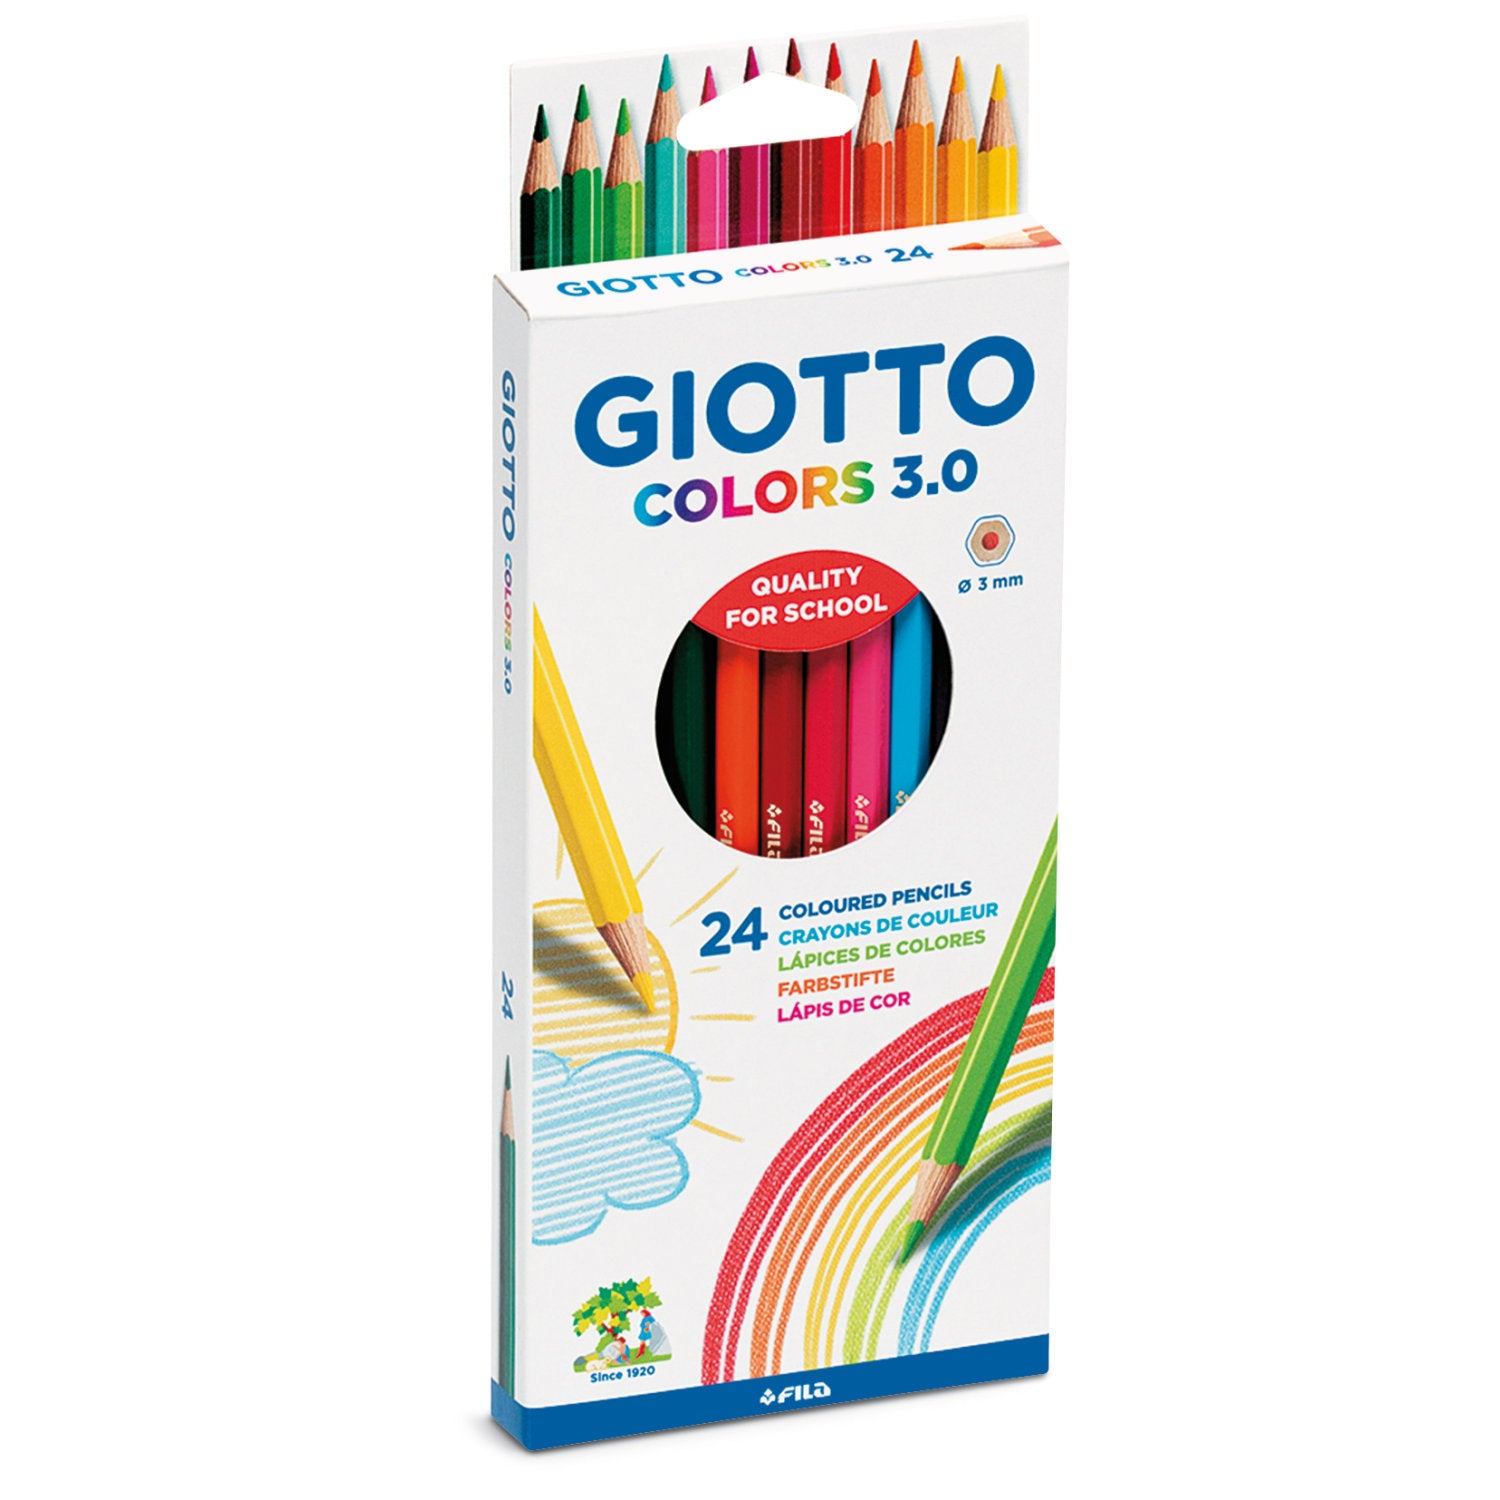 Giotto Colors Pencils 3.0